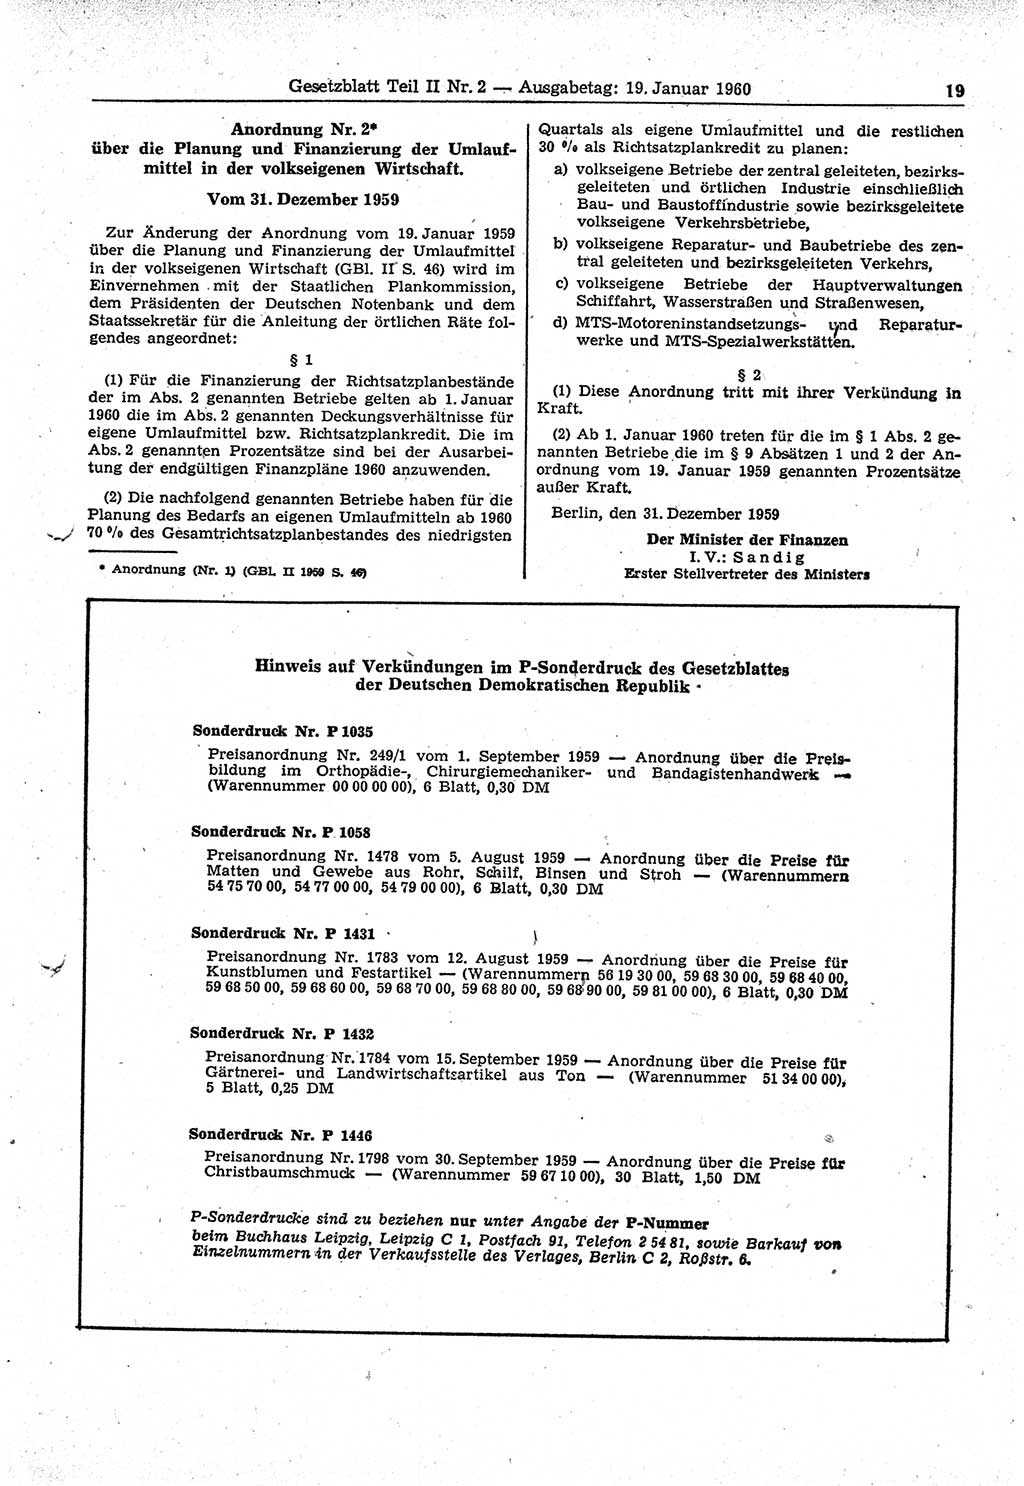 Gesetzblatt (GBl.) der Deutschen Demokratischen Republik (DDR) Teil ⅠⅠ 1960, Seite 19 (GBl. DDR ⅠⅠ 1960, S. 19)